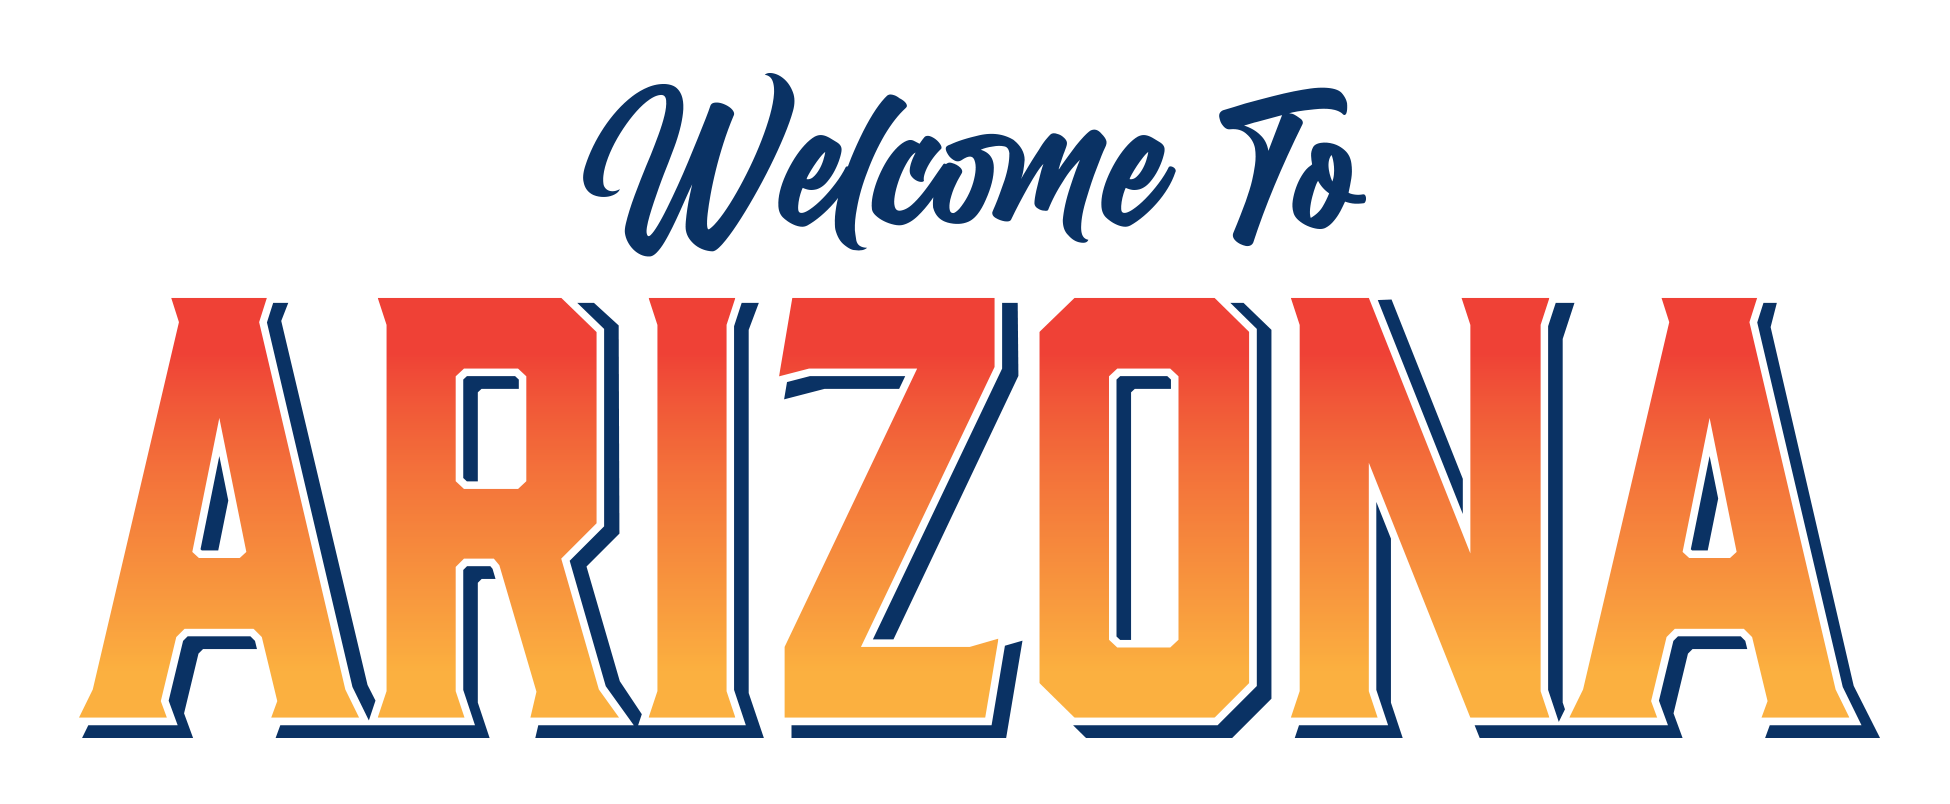 Welcome to AZ logo